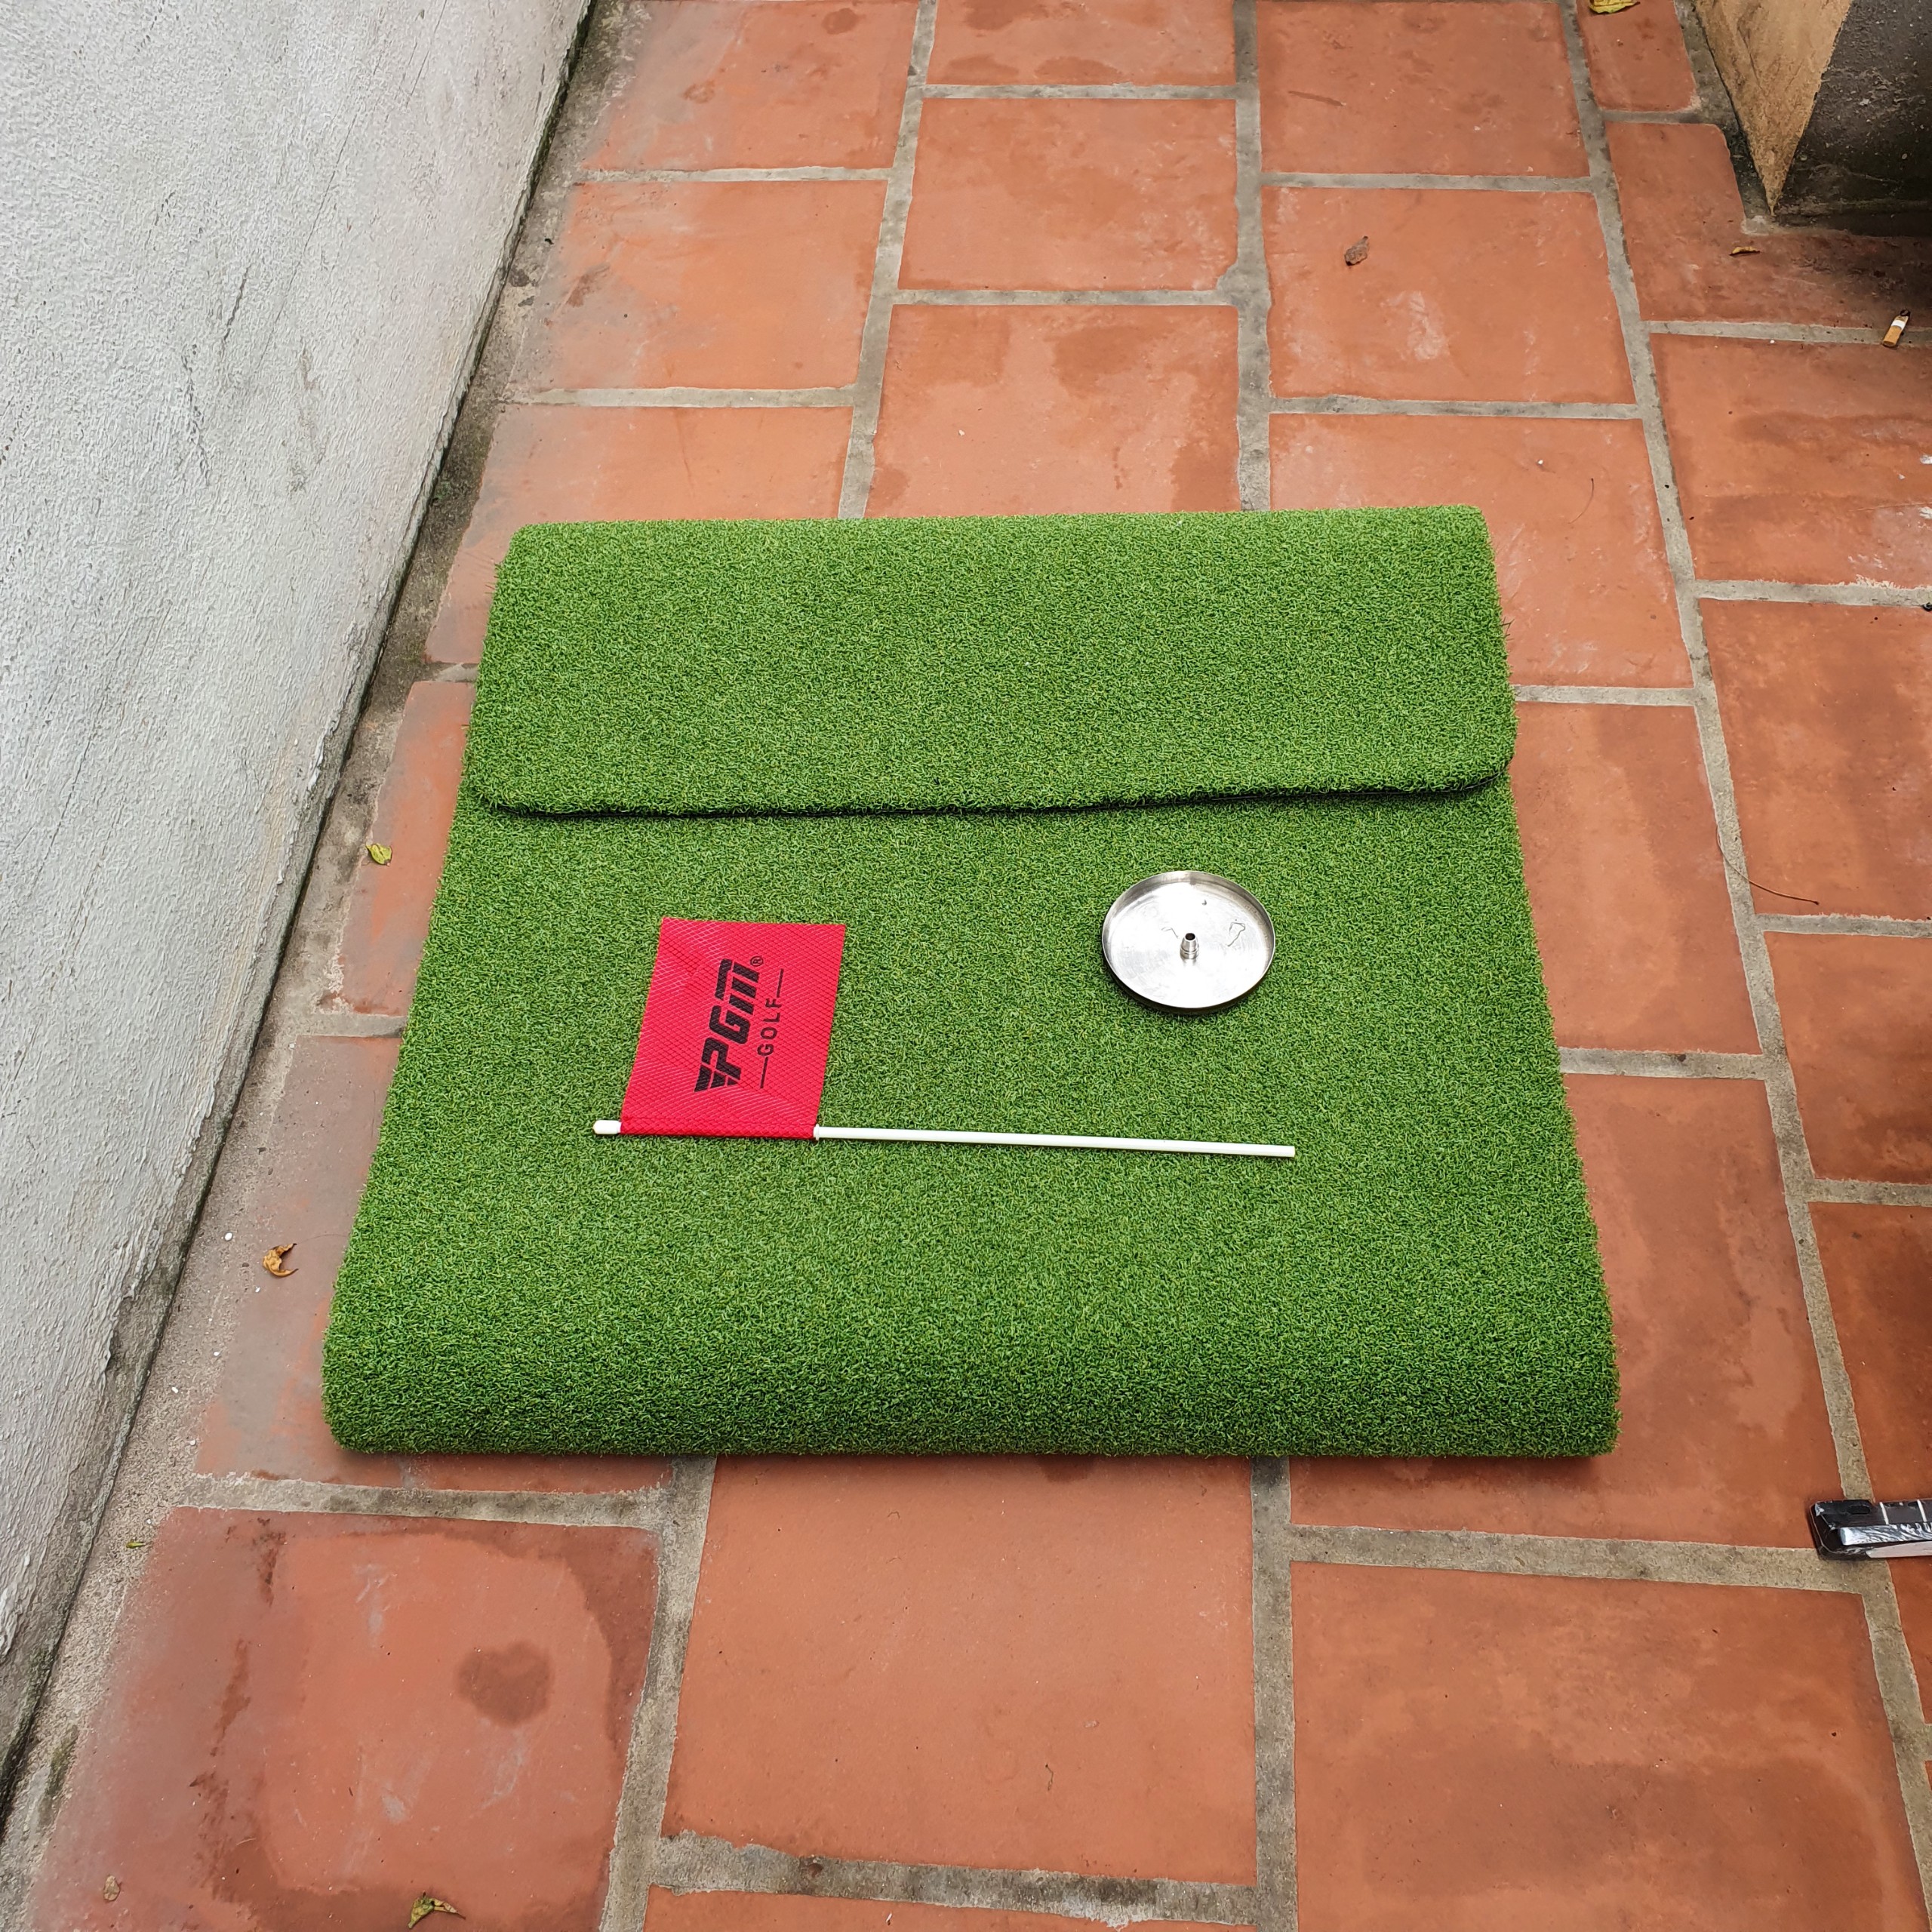 Thảm tập Putting golf tại nhà ECO-GP001: 2 lựa chọn, phù hợp mọi không gian, chất lượng tốt.